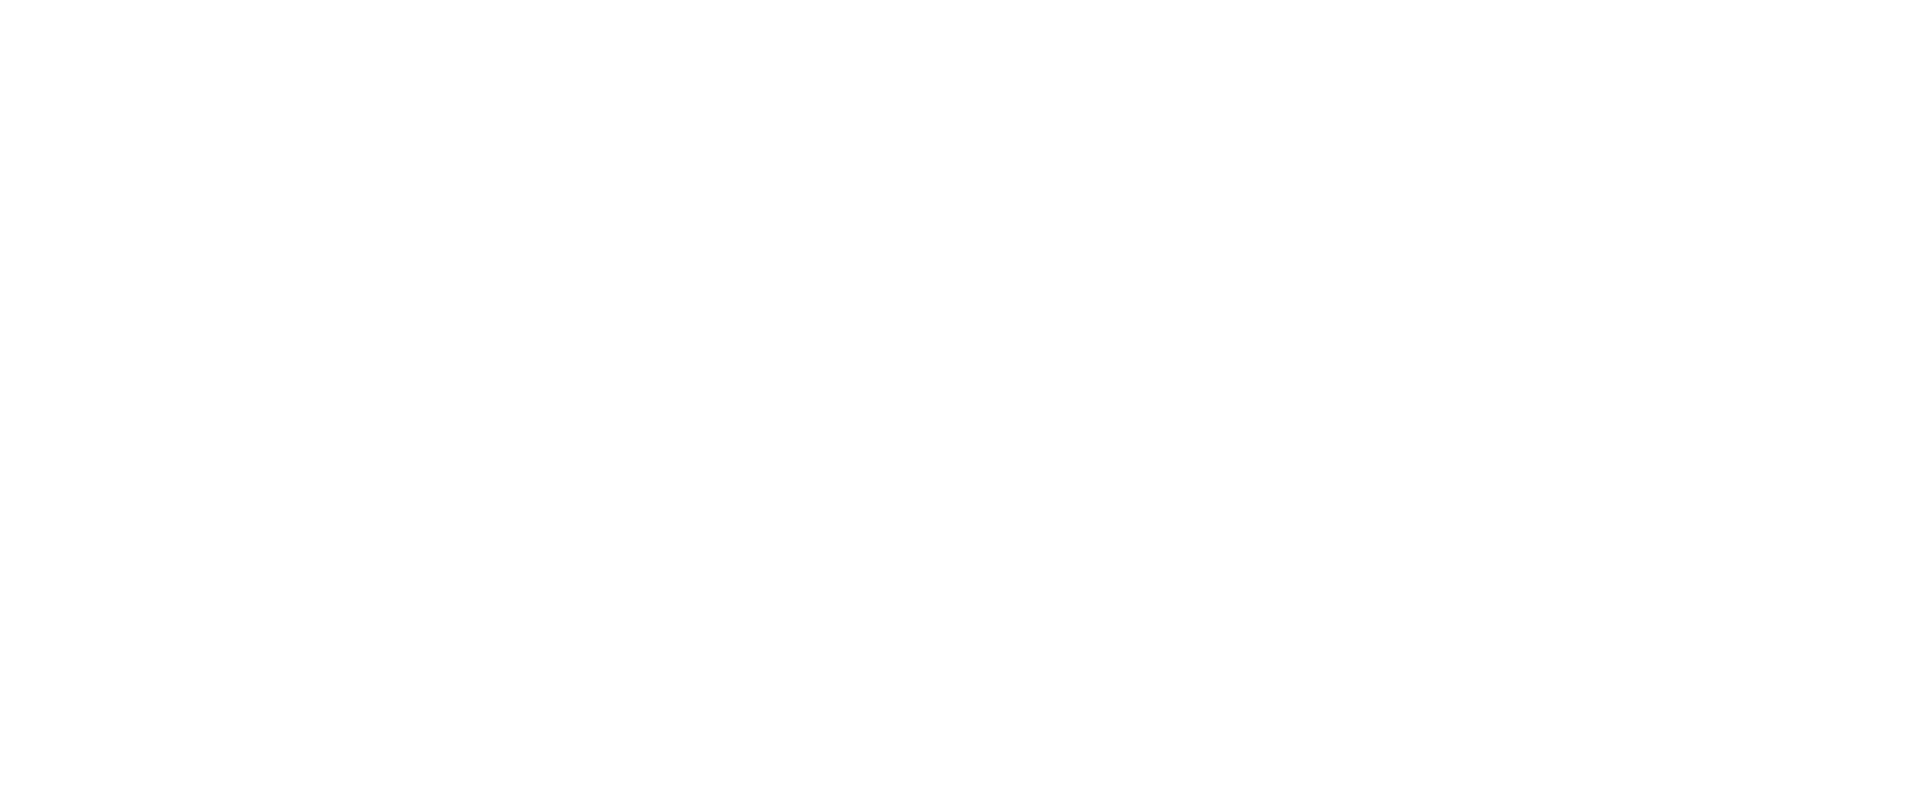 Linda Craft Team Realtors - Realtors